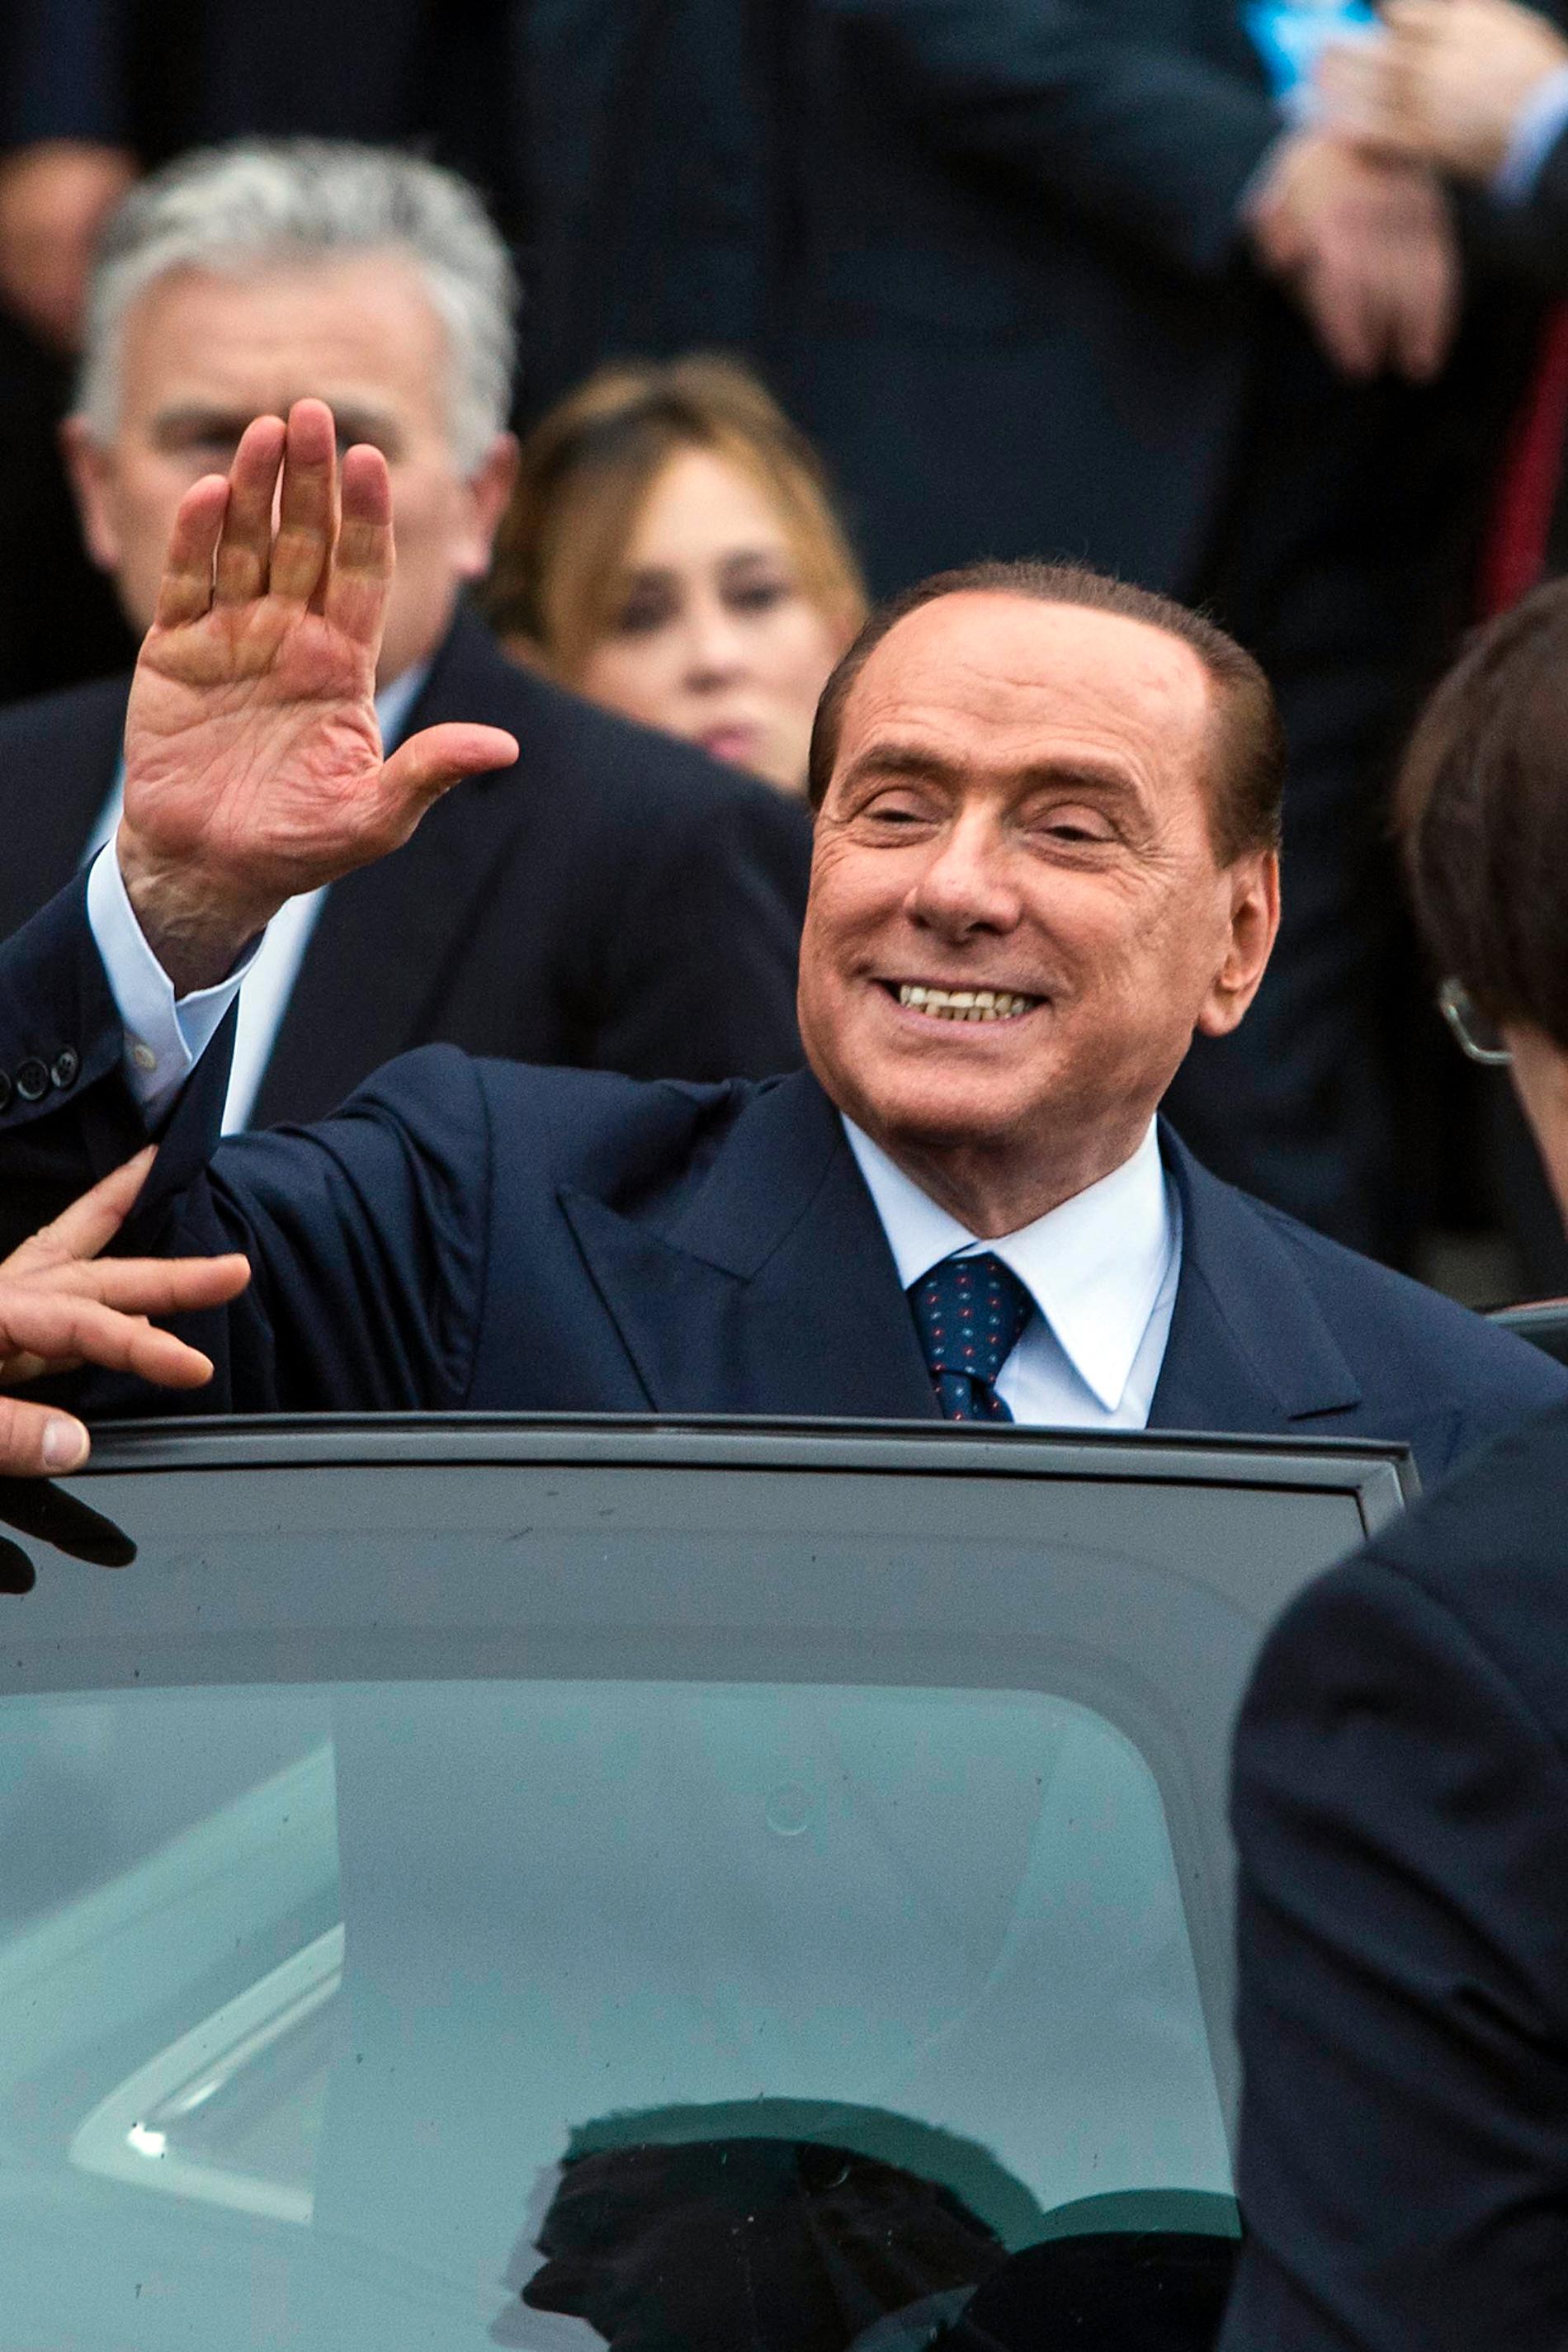 Berlusconi hyrde 17-åring som eskortflicka Silvio Berlusconi (Italiens regeringschef 2001-2006 samt 2008-2011) – skandalomsusad kvinnokarl som bland annat använde regeringsplanet för att flyga in eskortflickor till privata fester. Ett av de mer uppmärksammade fallen gäller den då 17-åriga Karima "Ruby" El Mahroug. Rubyfallet slutade i rätten men Berlusconi fortsätter trots det sin jakt på unga kvinnor.